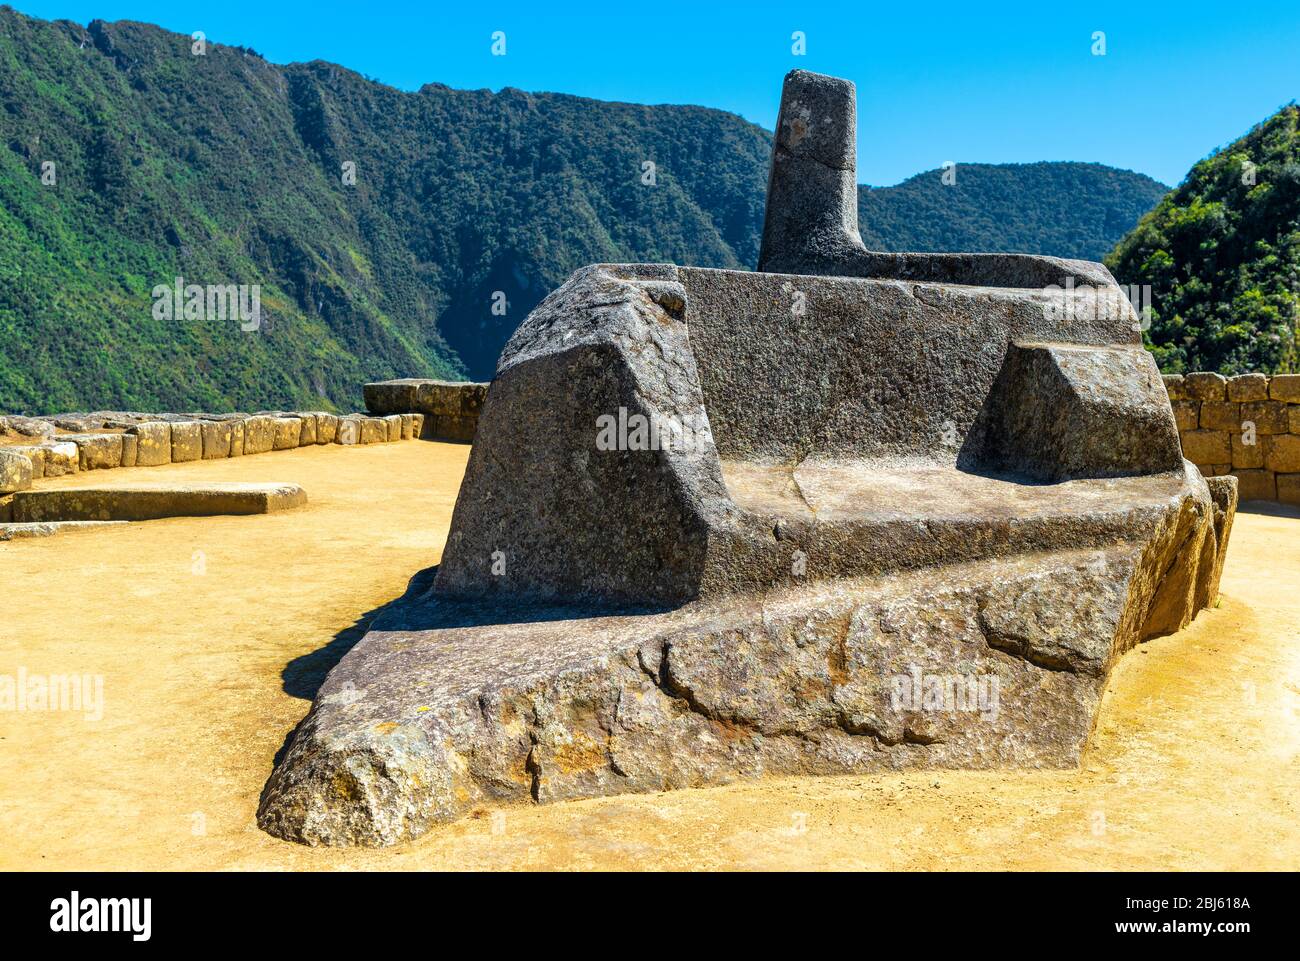 Le trône de l'Inca a sculpté la roche de granit, un observatoire astronomique, dans la ruine de Machu Picchu, Cusco, Pérou. Banque D'Images